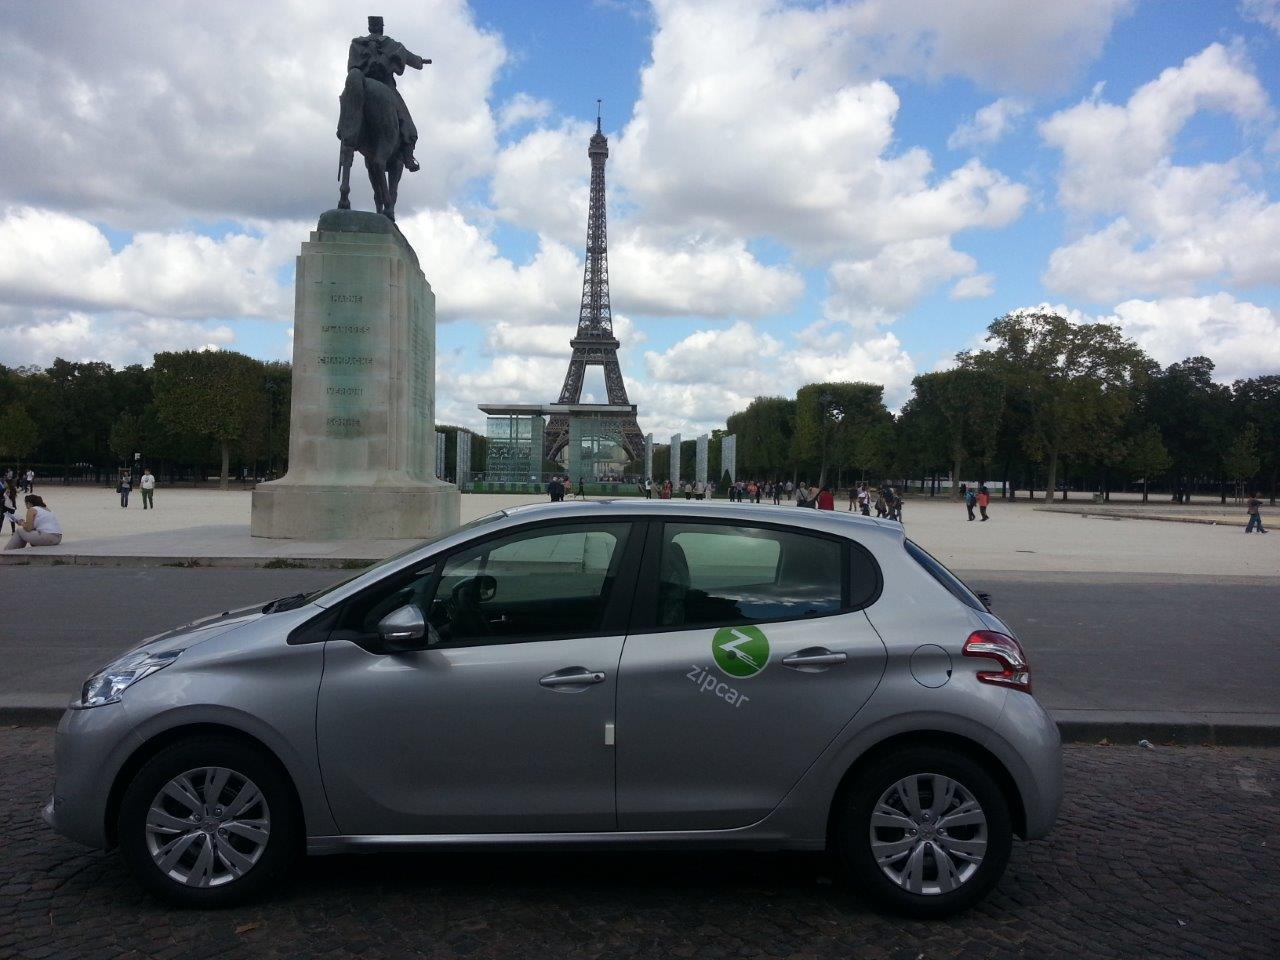 Zipcar/SNCF, Tripndrive/Effia : course aux alliances dans l’autopartage en gare